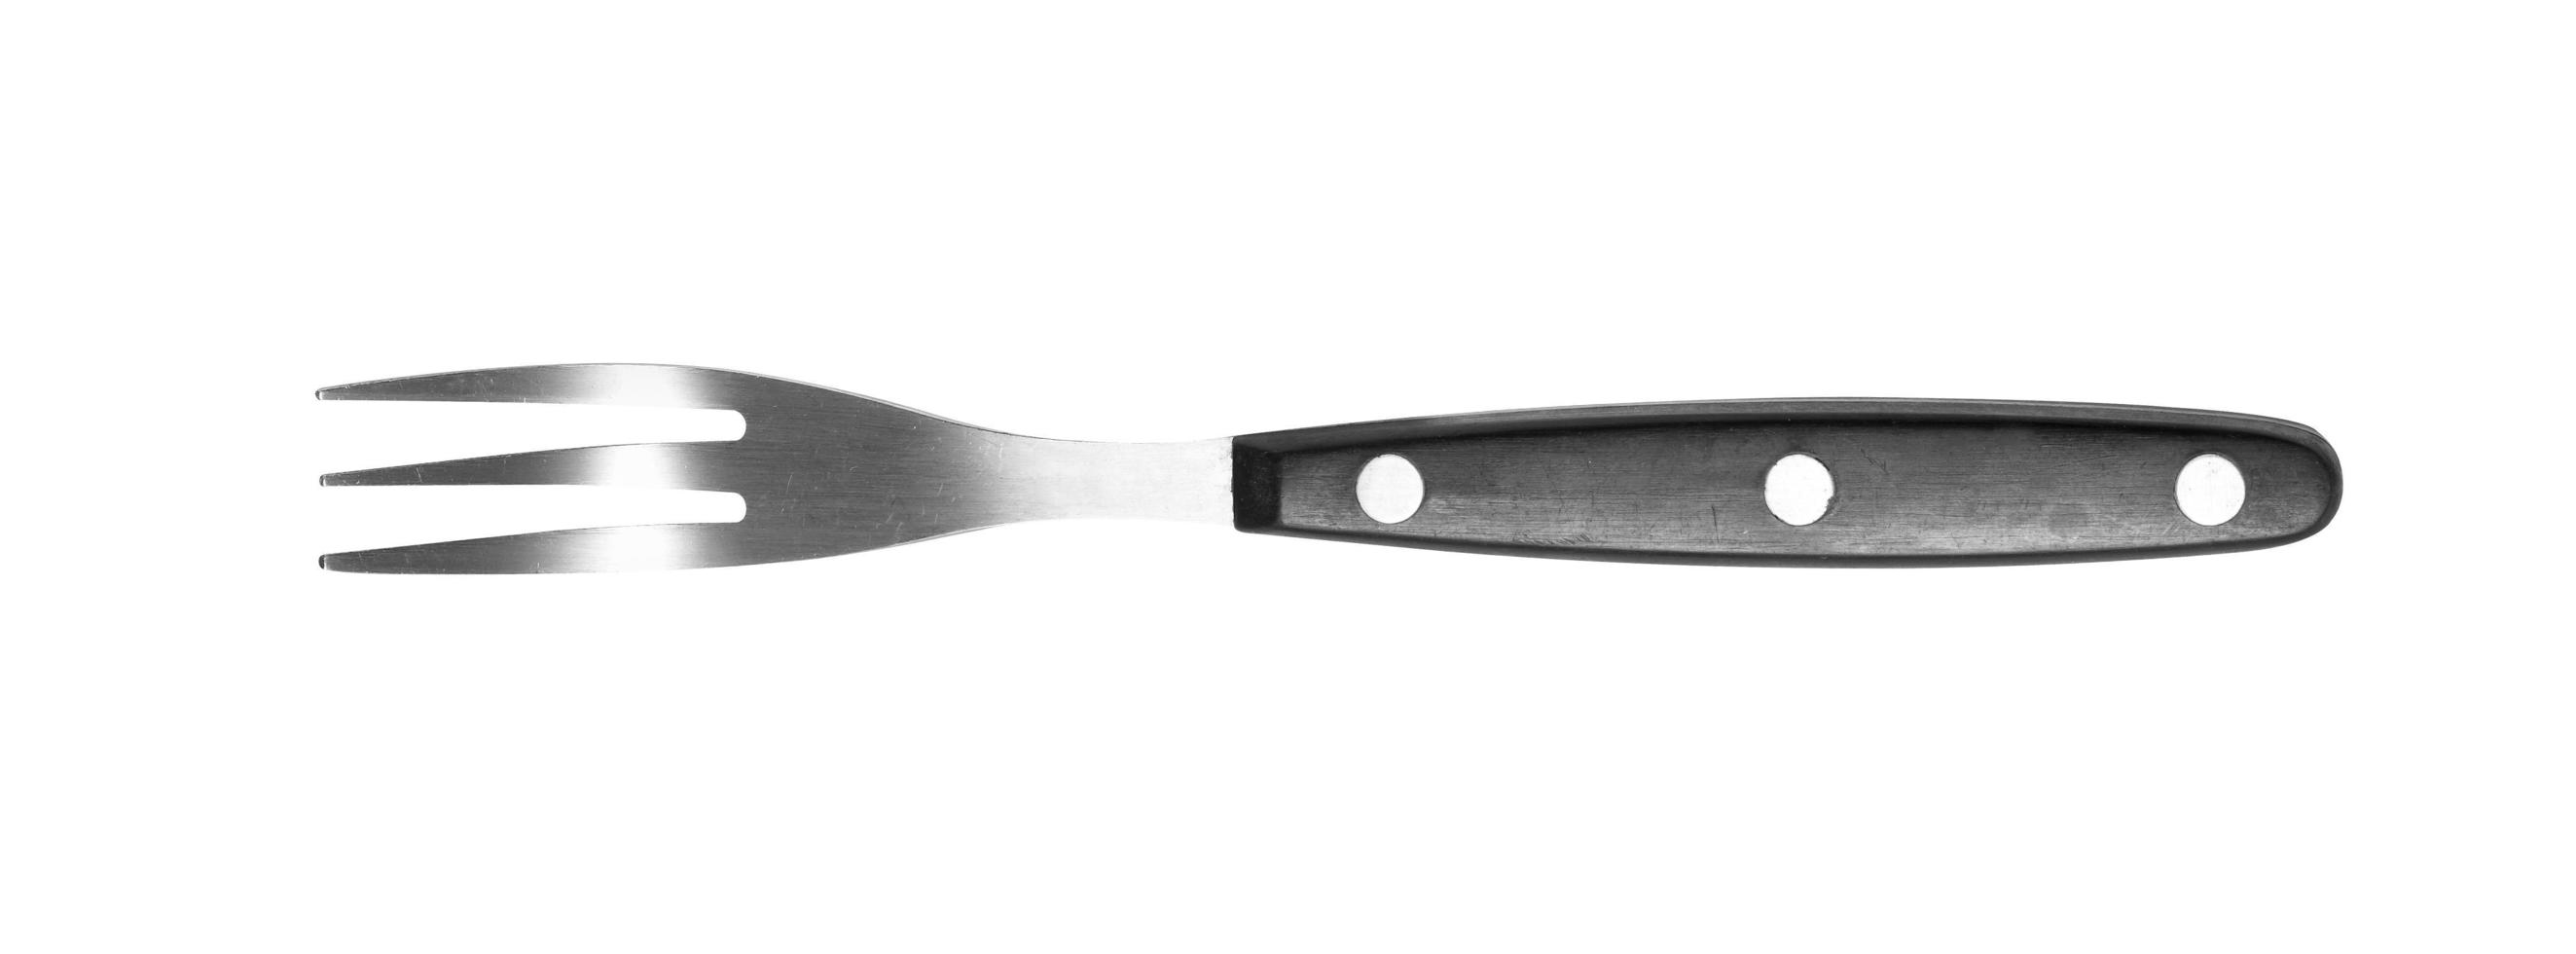 moderne vork op witte achtergrond foto